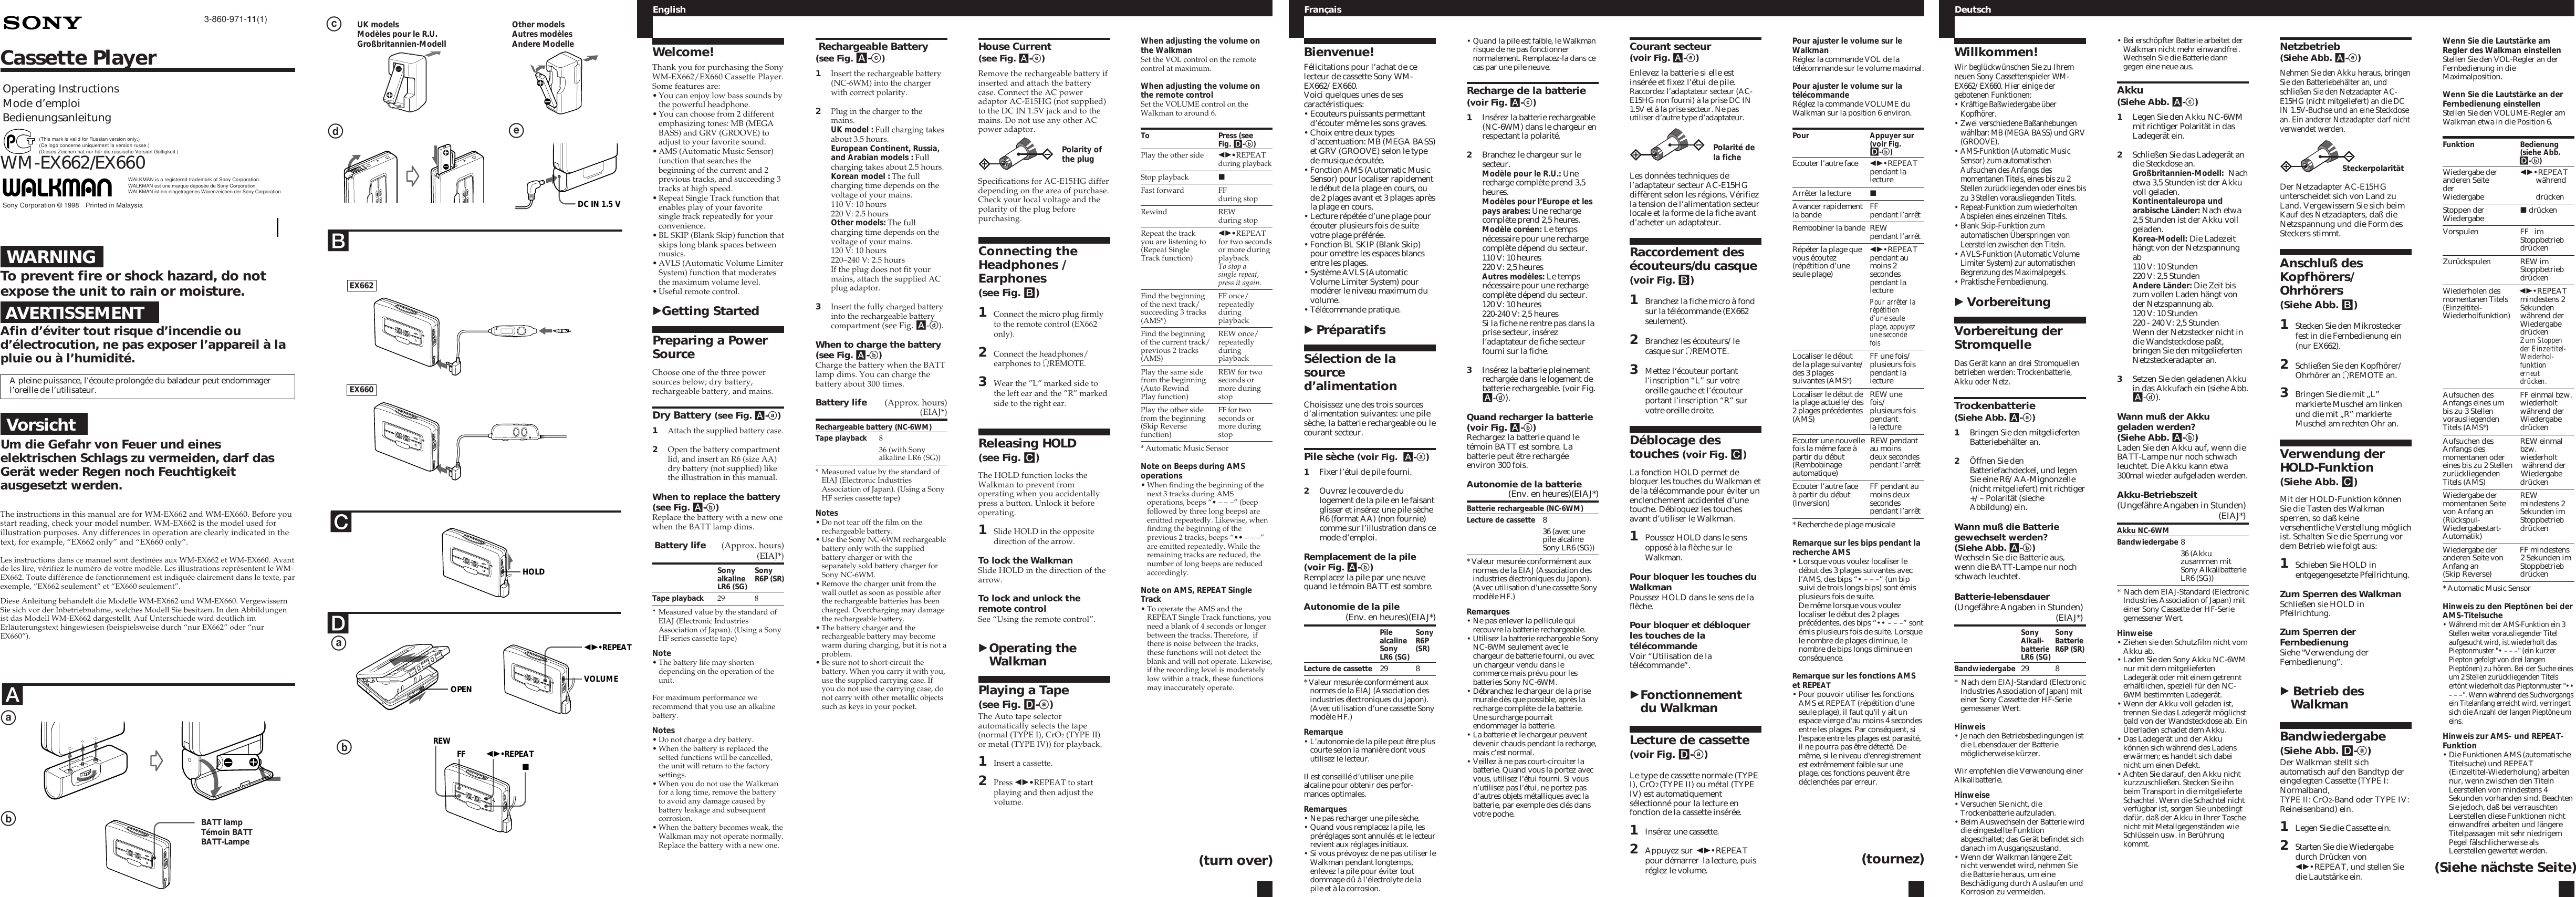 Page 1 of 2 - Sony Sony-Wm-Ex660-Users-Manual- WM-EX662/EX660  Sony-wm-ex660-users-manual